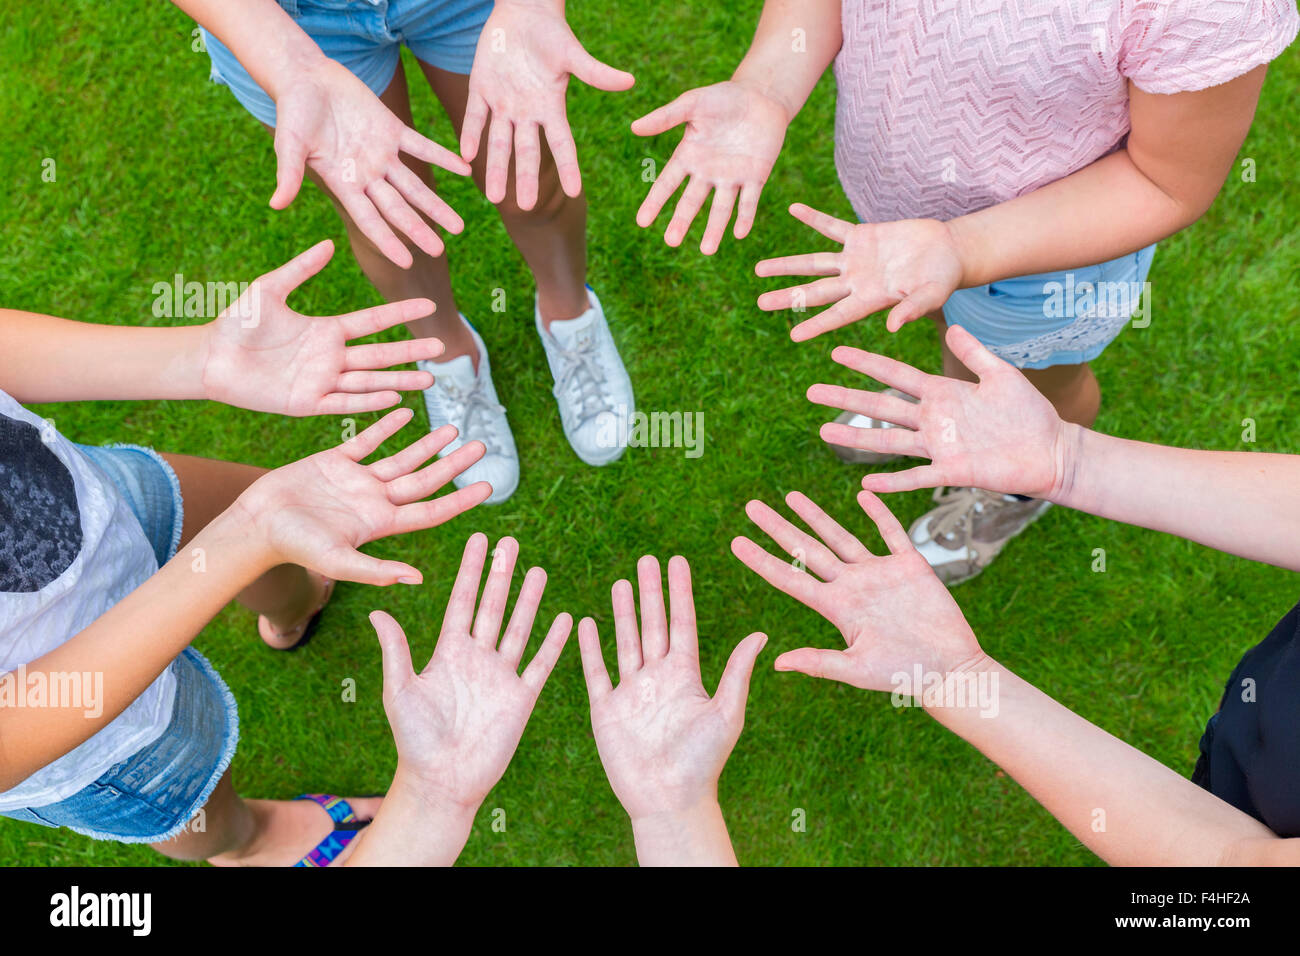 Dieci bracci dei bambini in cerchio con le palme delle mani fino al di sopra di erba verde Foto Stock